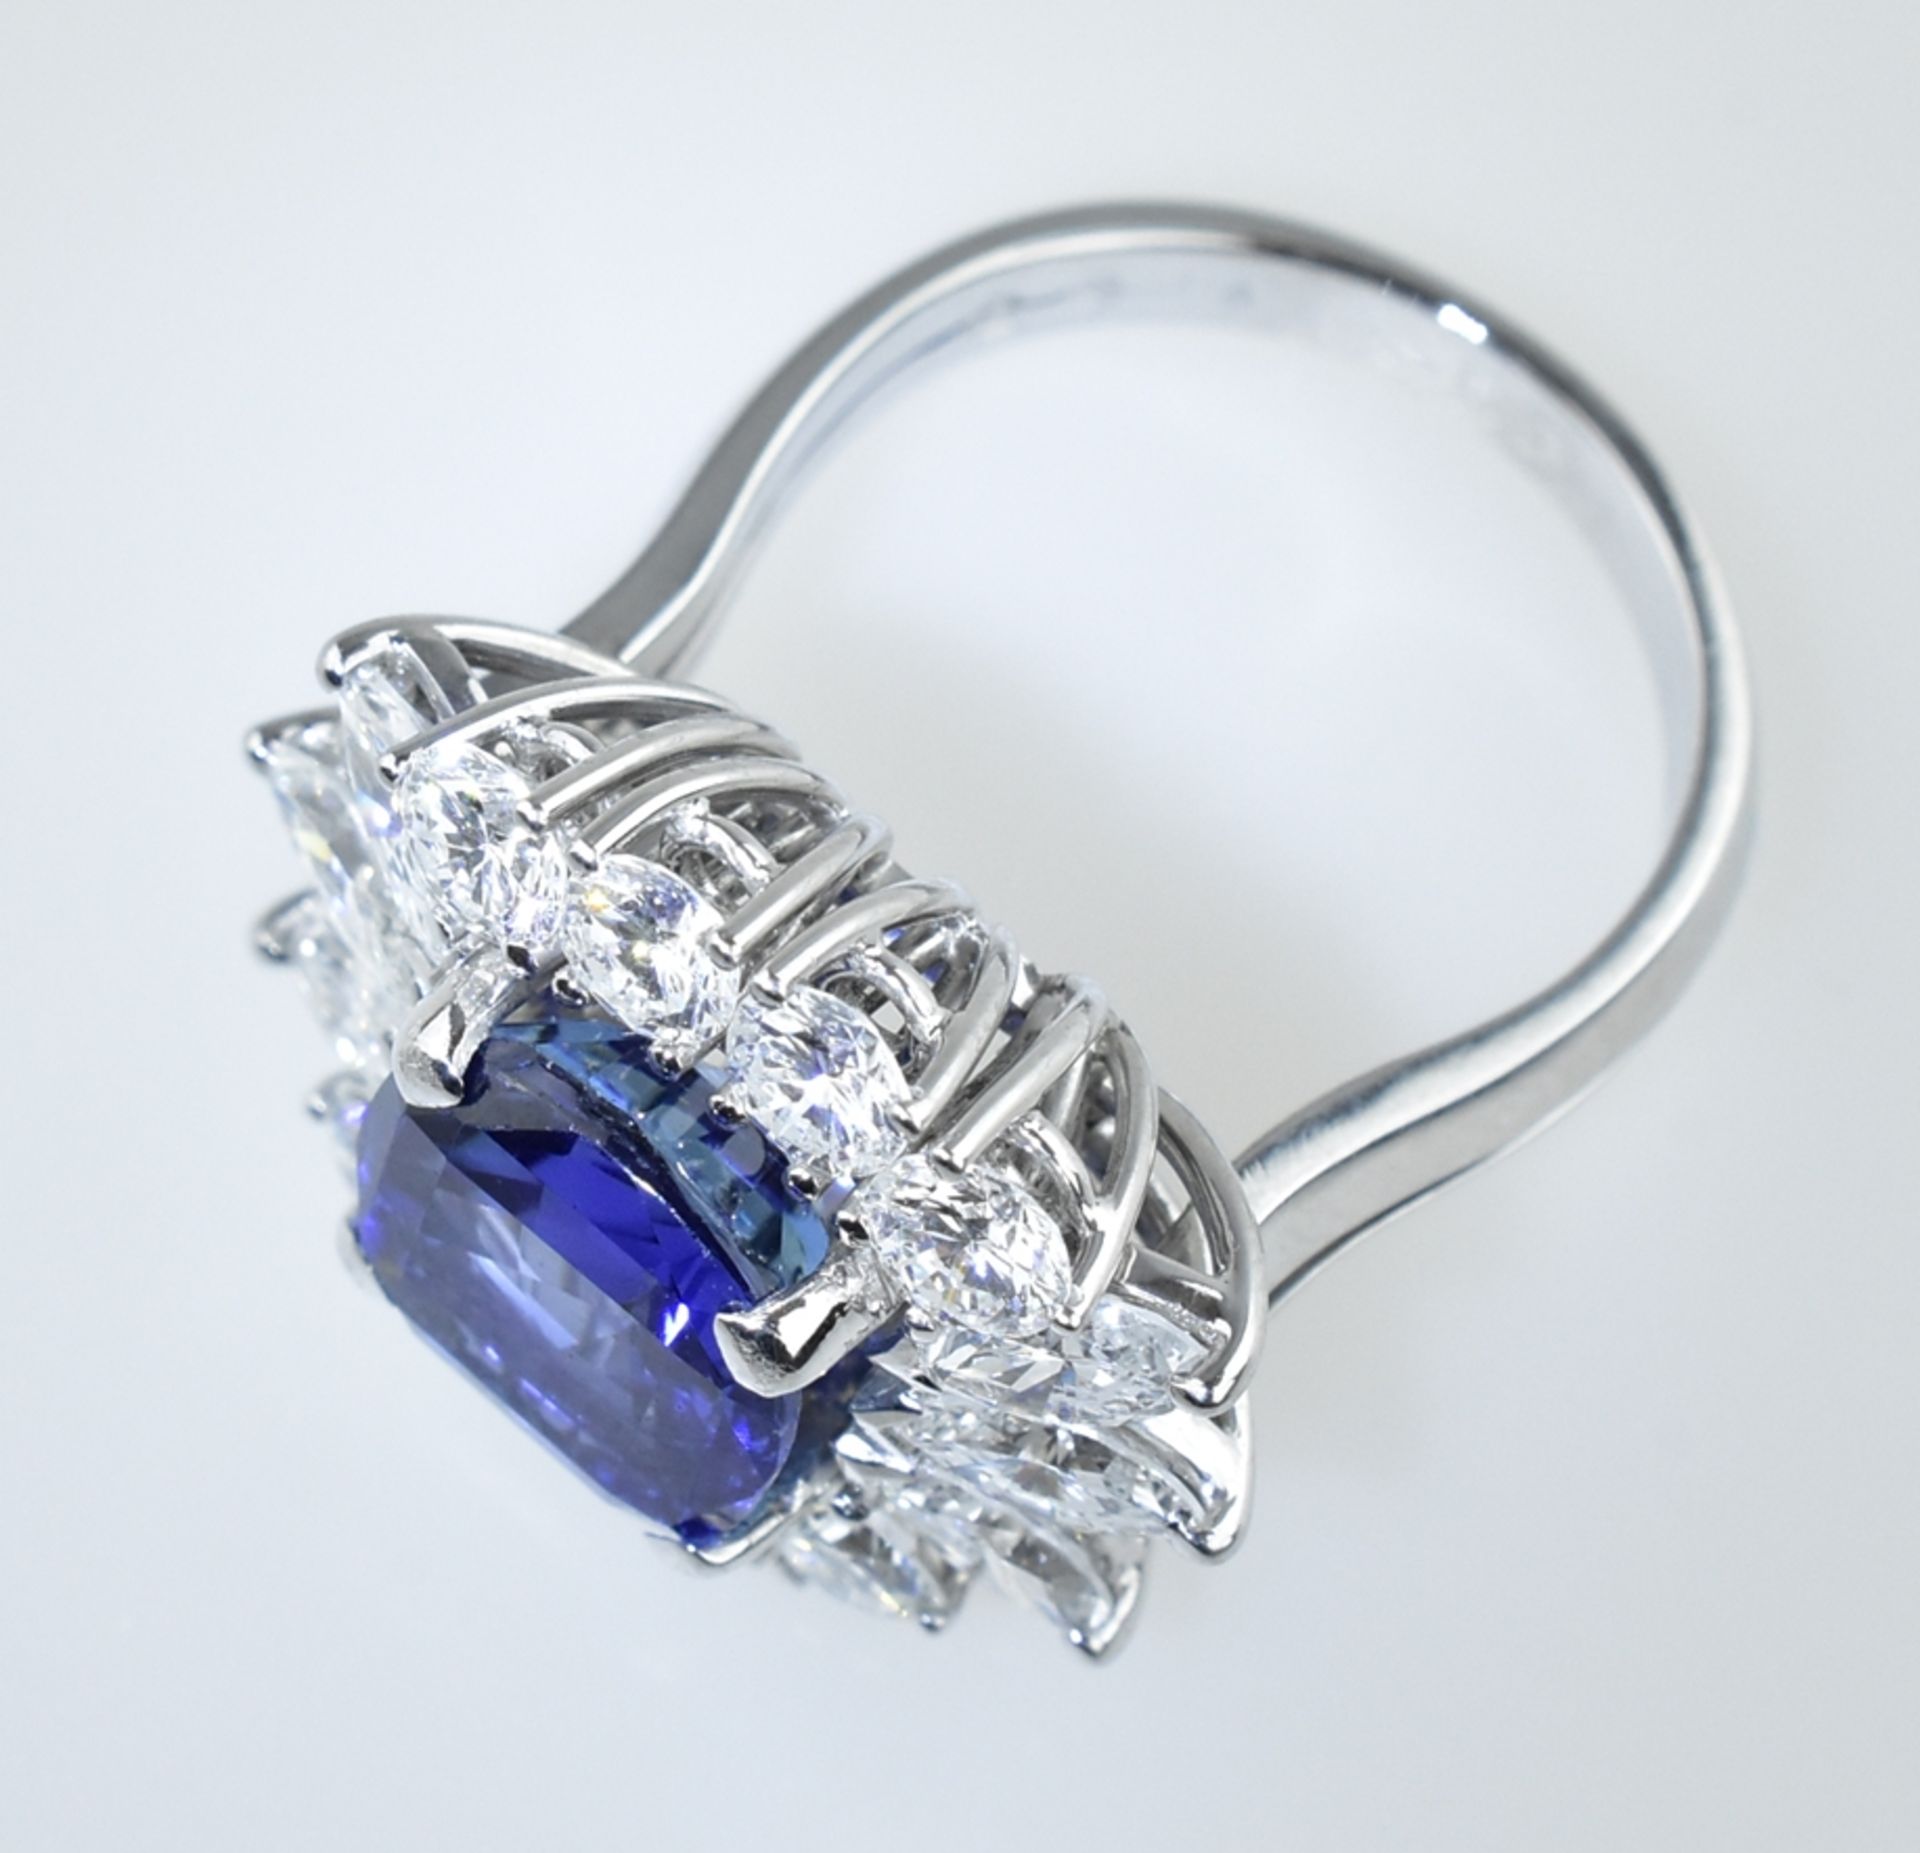 Außergewöhnlicher Ring mit Burma Saphir. Saphir von 5,94 ct. in leuchtendem Blau. Kissenschliff. Ed - Image 2 of 3